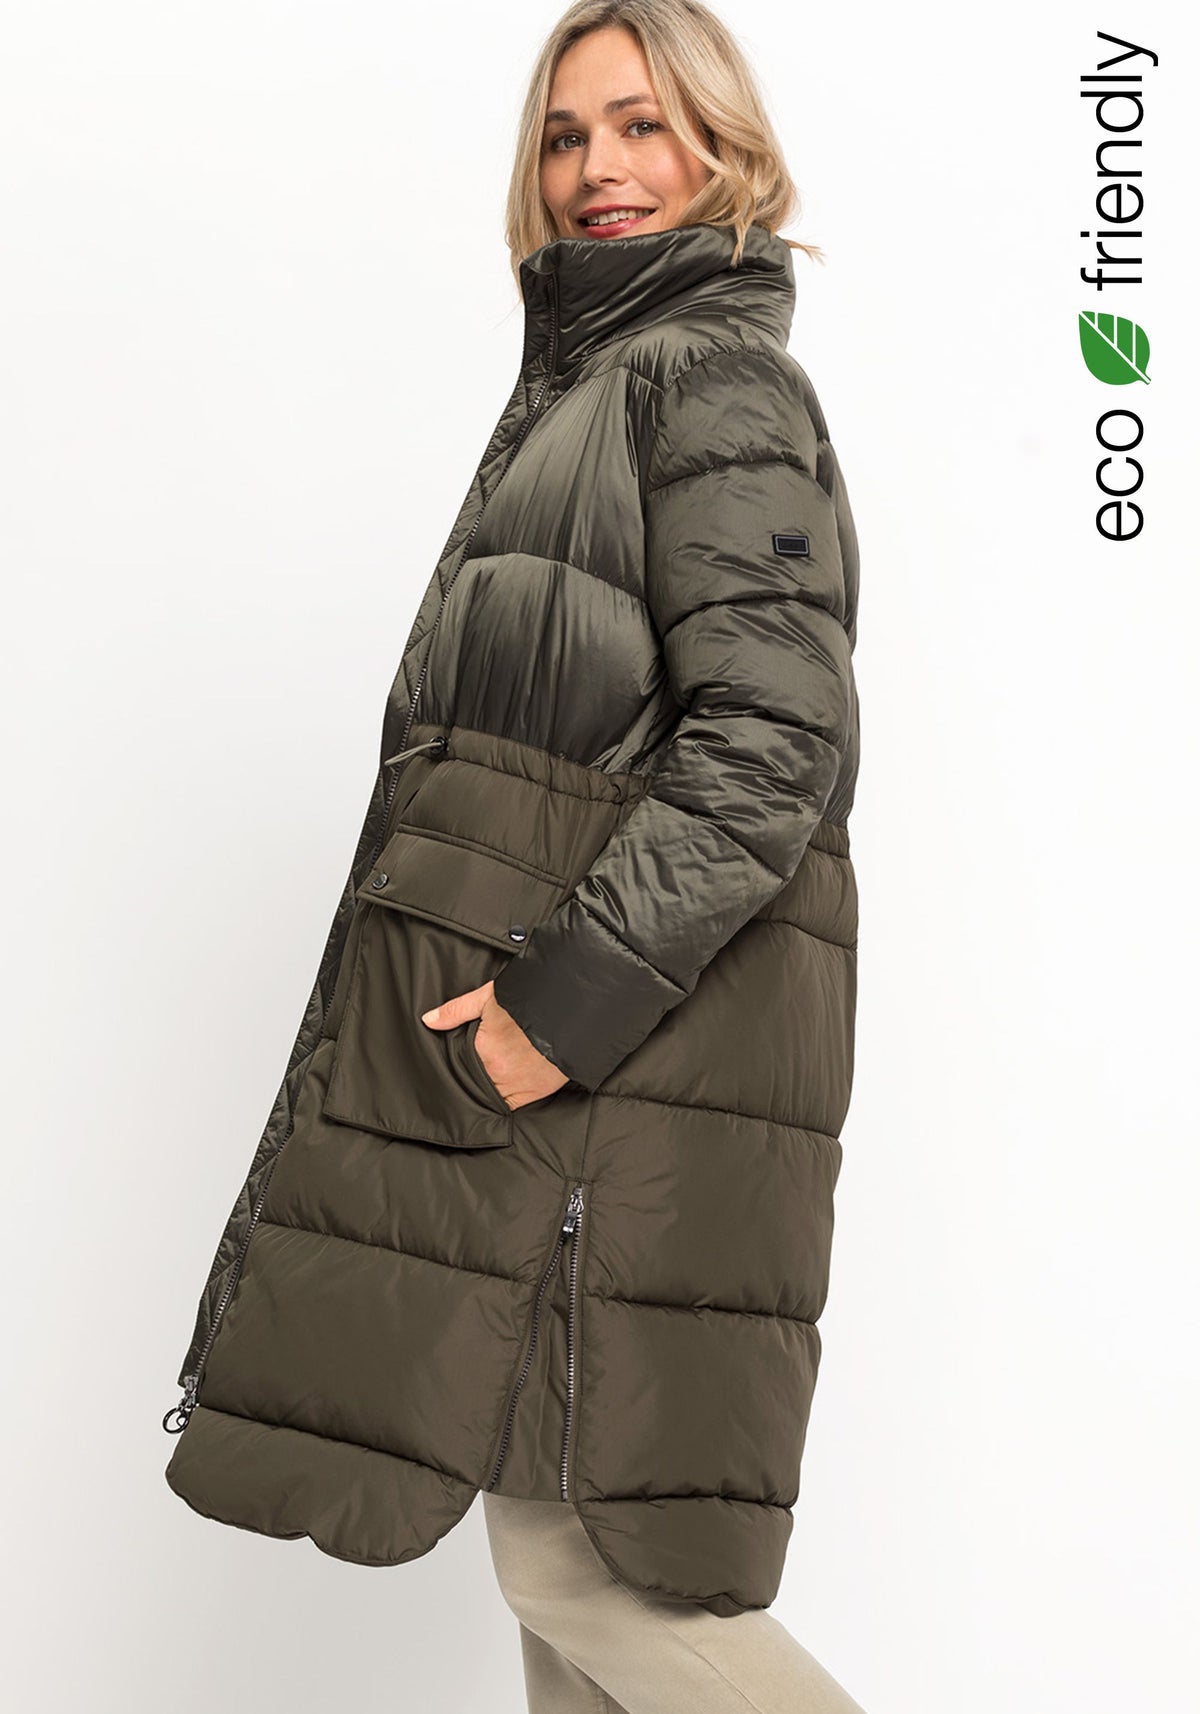 Manteau matelassé long bicolore fabriqué avec REPREVE® et 3M Thinsulate™.